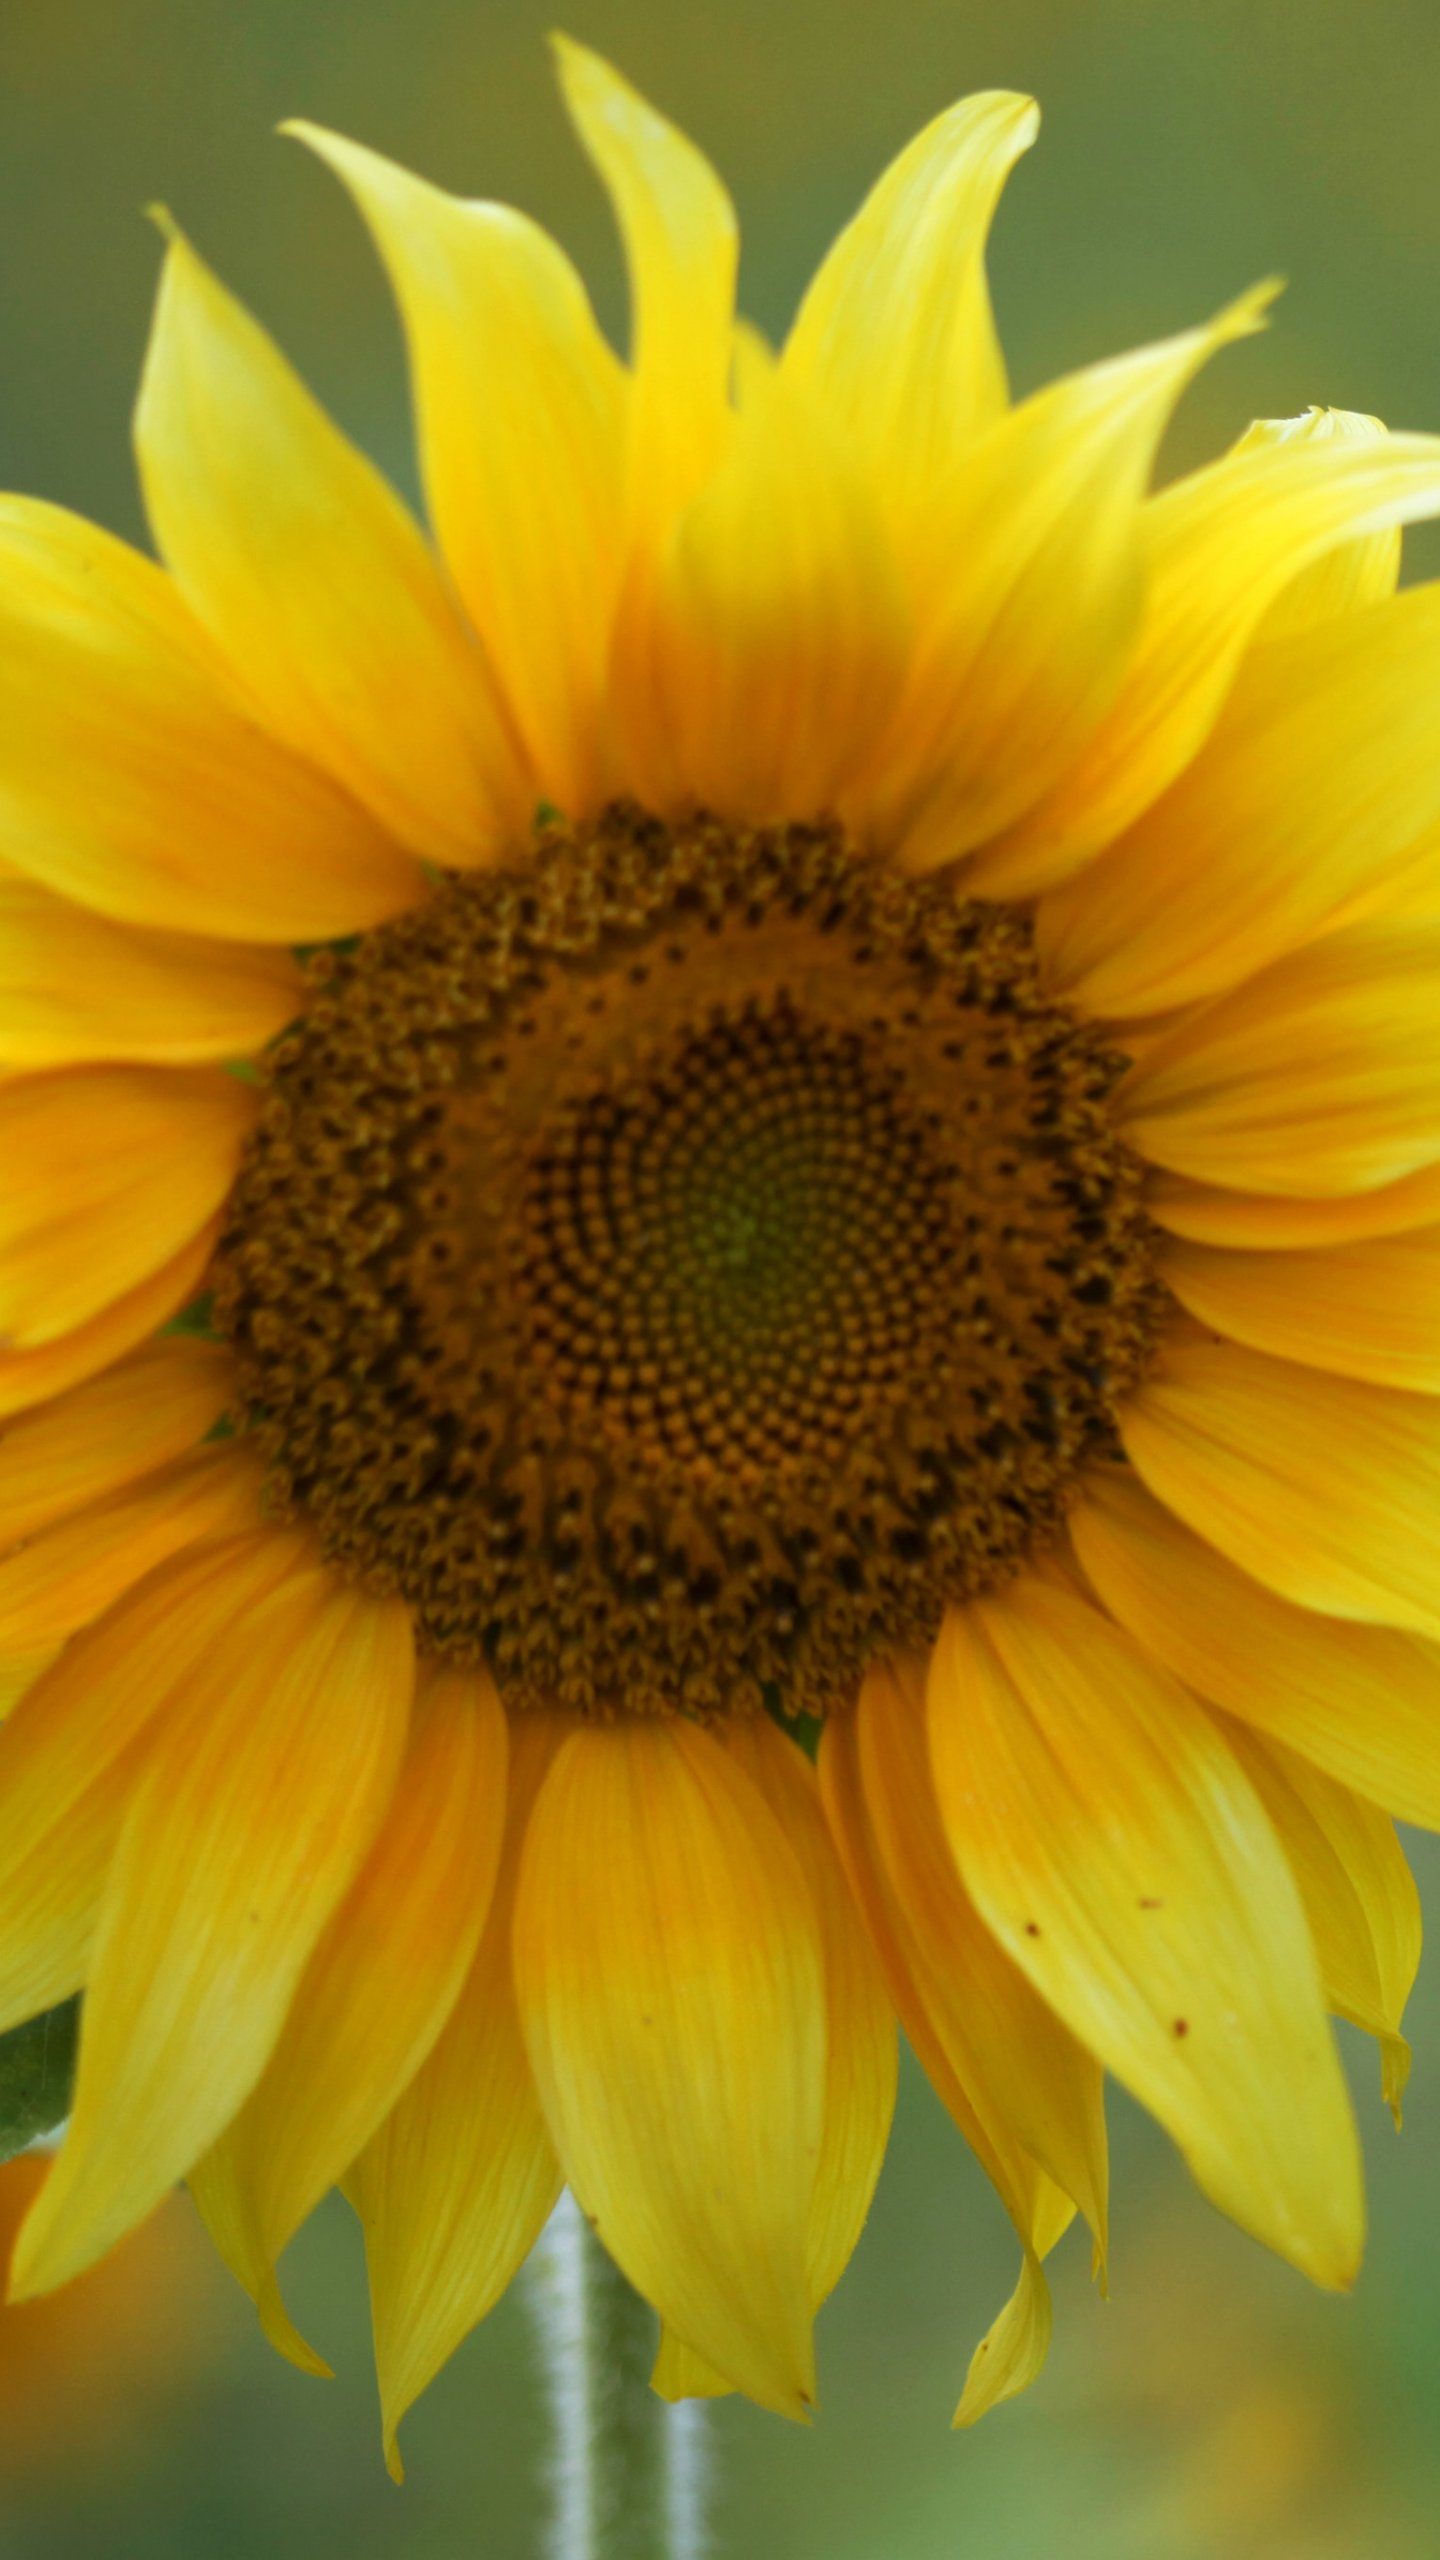 Sunflower Wallpaper - Fondos de iPhone, Android y de escritorio